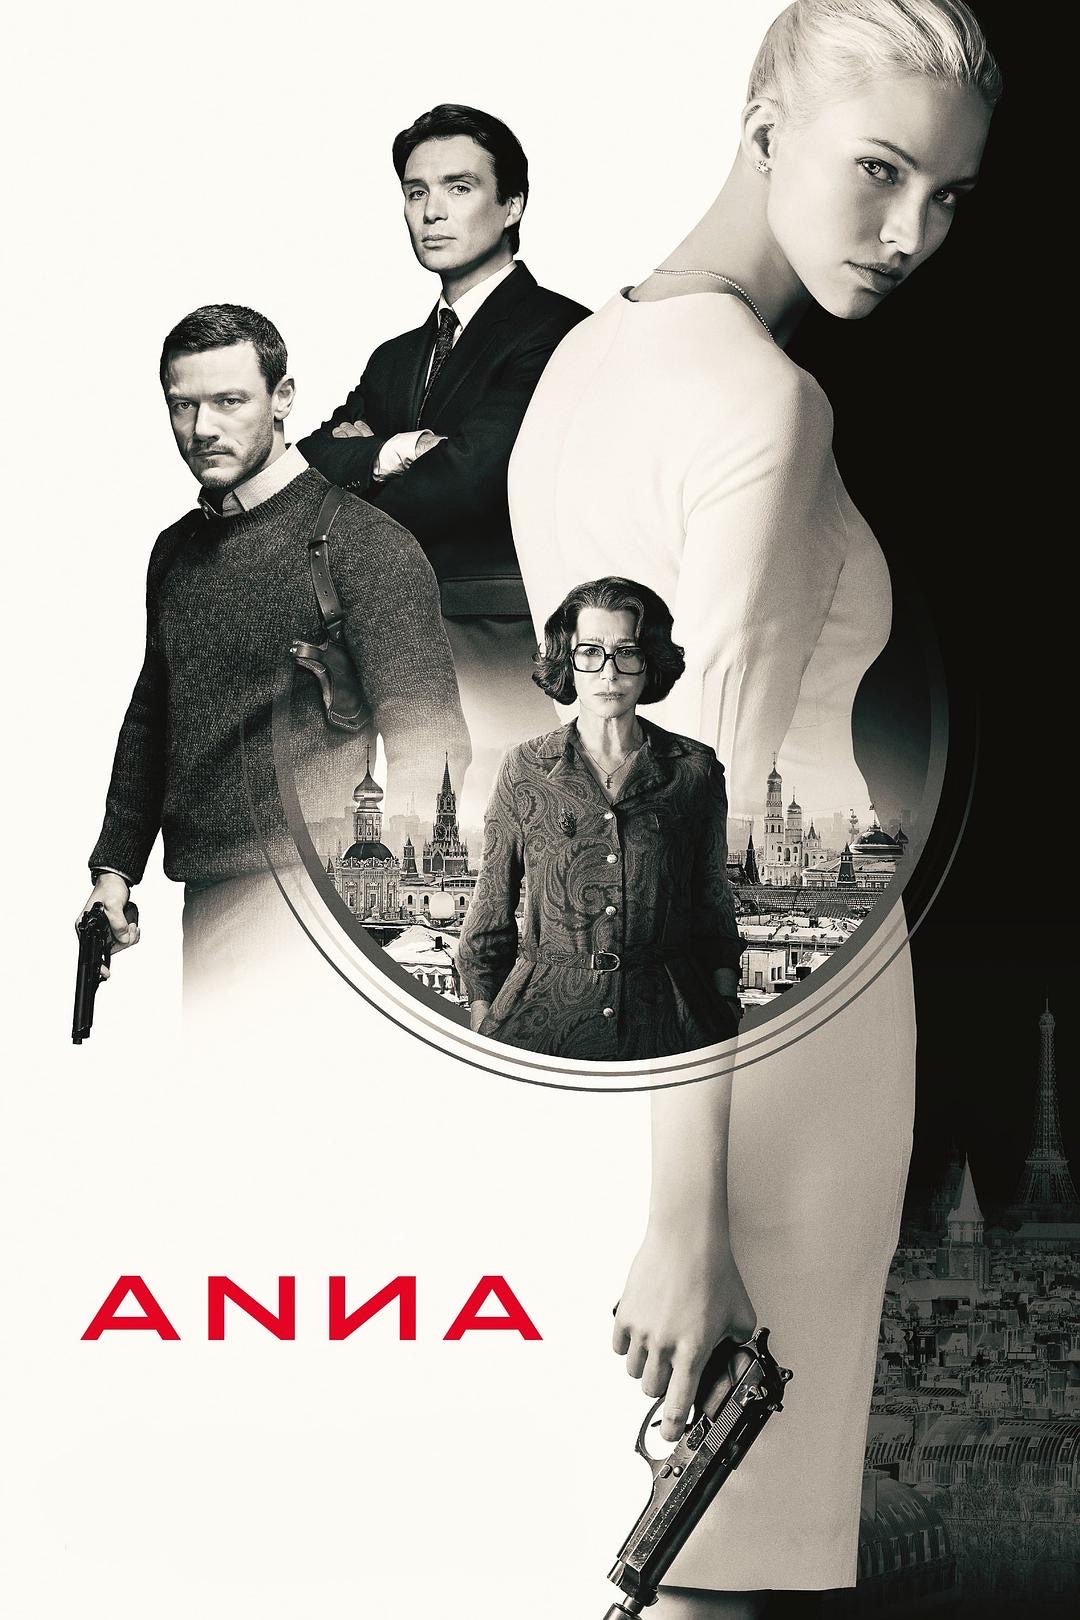 完成暗杀任务并实现自我救赎的电影——《安娜》